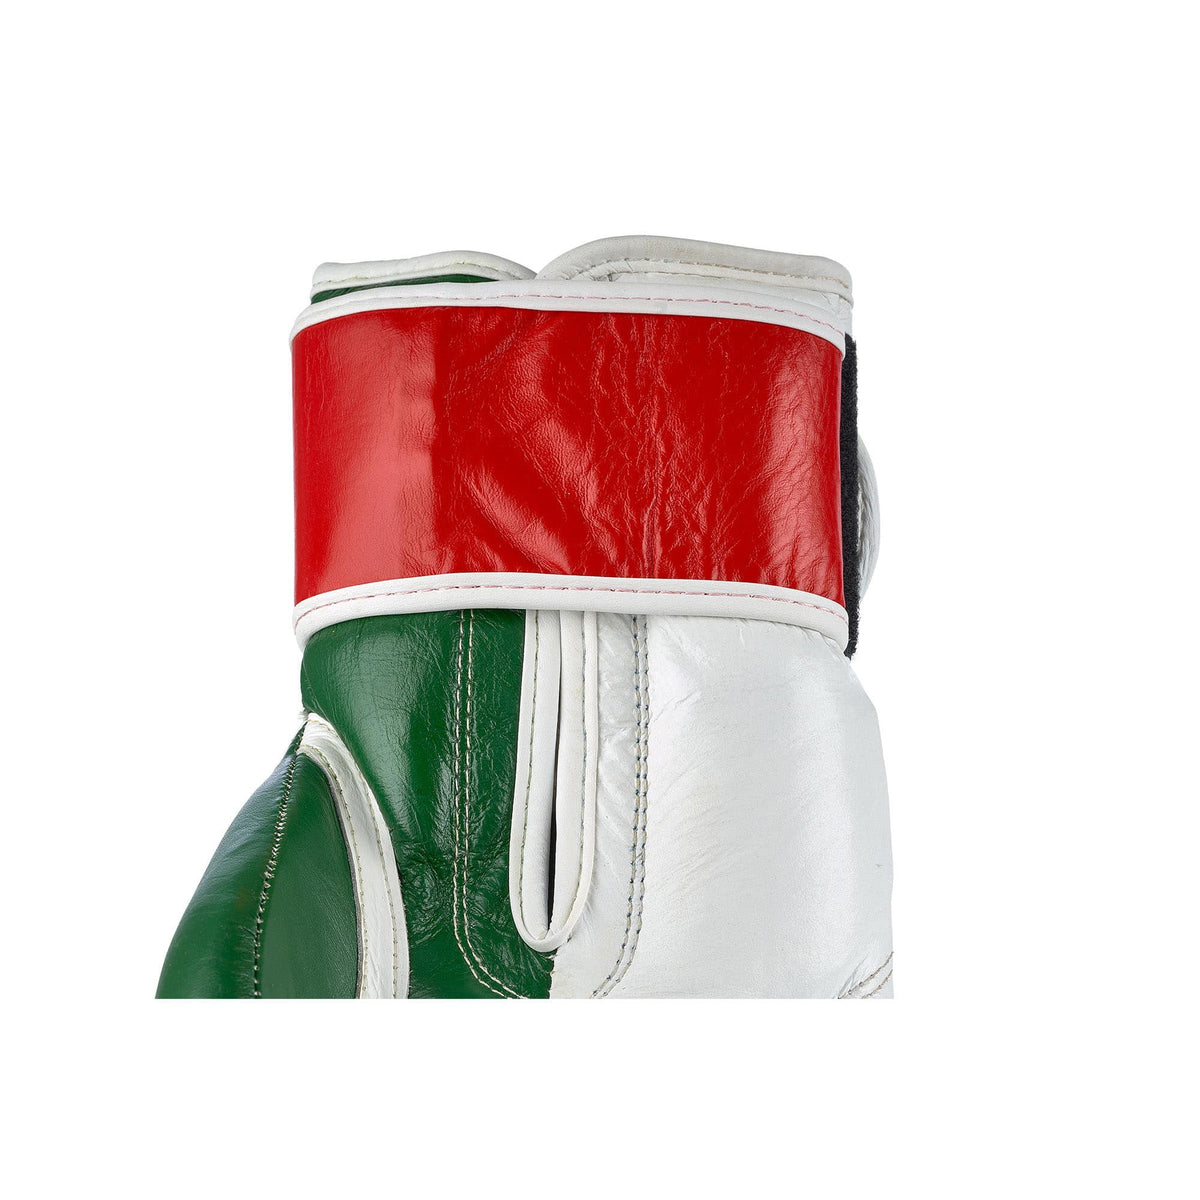 Innenansicht des Gelenkbereichs der libanesischen Premium Boxhandschuhe, mit Fokus auf das hochwertige Leder des Klettverschlusses und die präzisen Nähte. Diese Detailaufnahme zeigt die sorgfältige Verarbeitung, die Langlebigkeit und die Stabilität des Handschuhs gewährleistet, optimiert für Boxer aller Niveaus. Die Qualität des Materials und die saubere Verarbeitung bieten zusätzlichen Komfort und Schutz für das Handgelenk, ideal für intensives Training und Sparring.